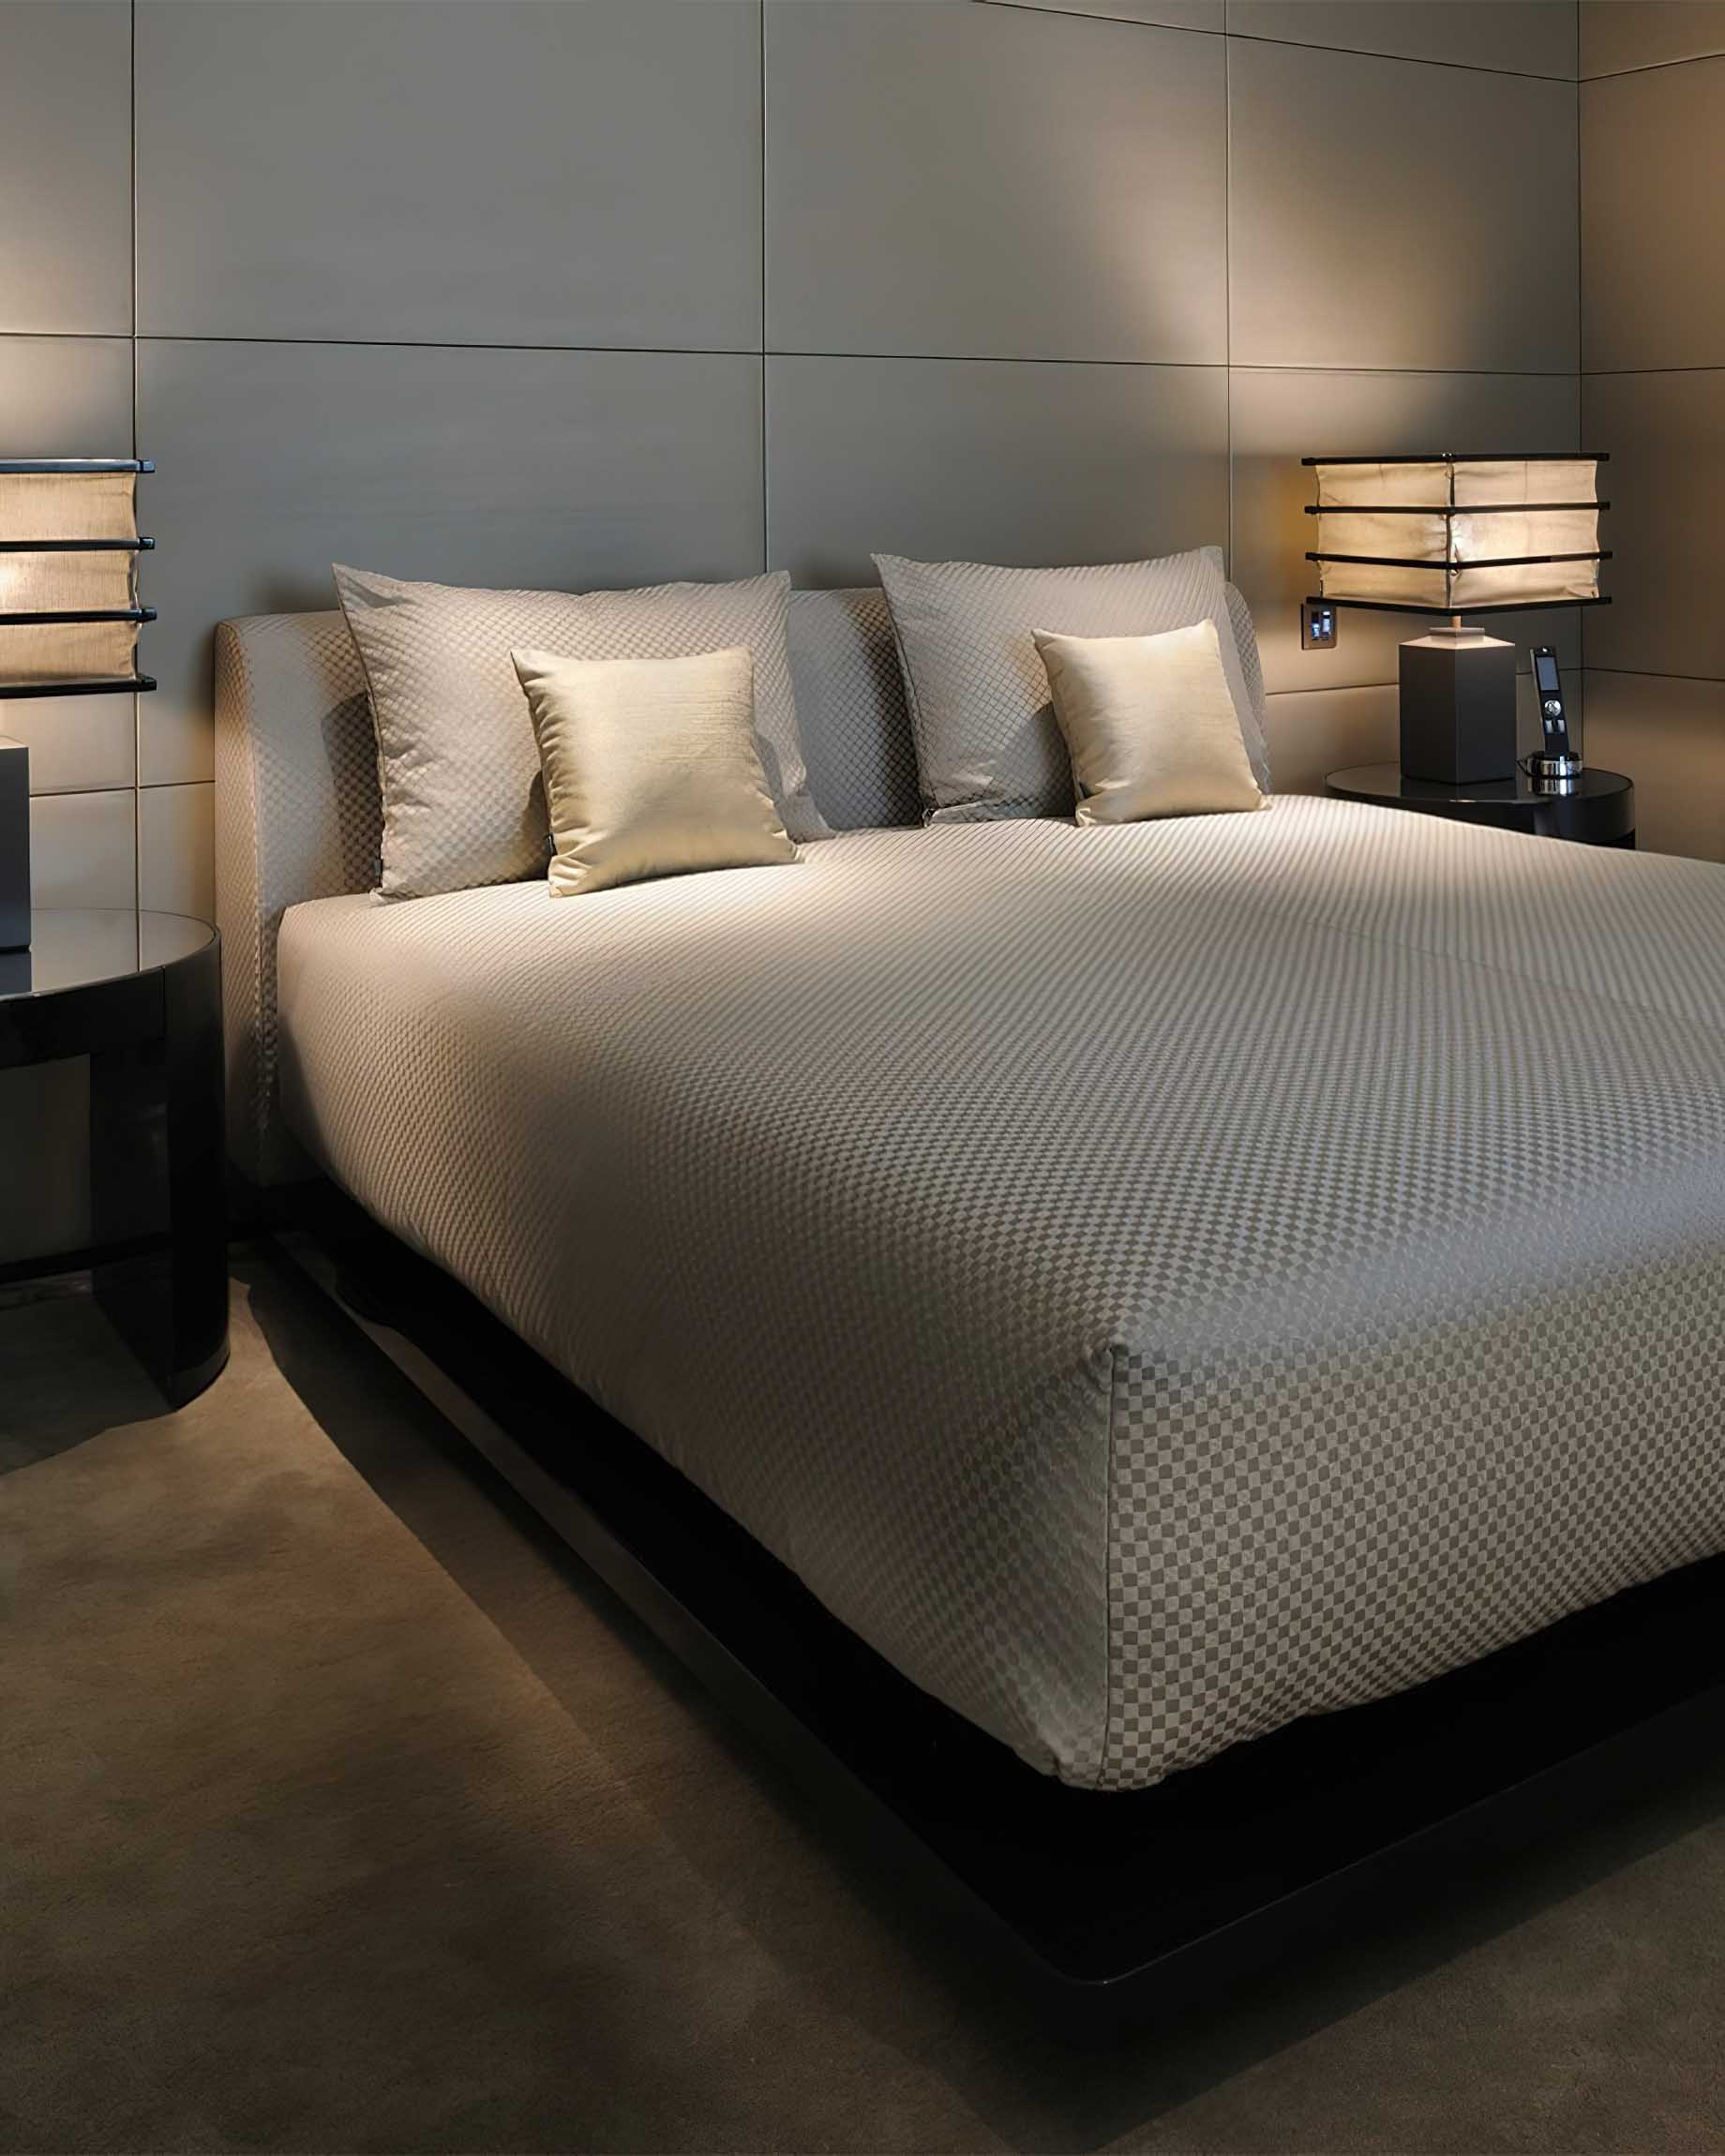 045 – Armani Hotel Milano – Milan, Italy – Armani Suite Bedroom